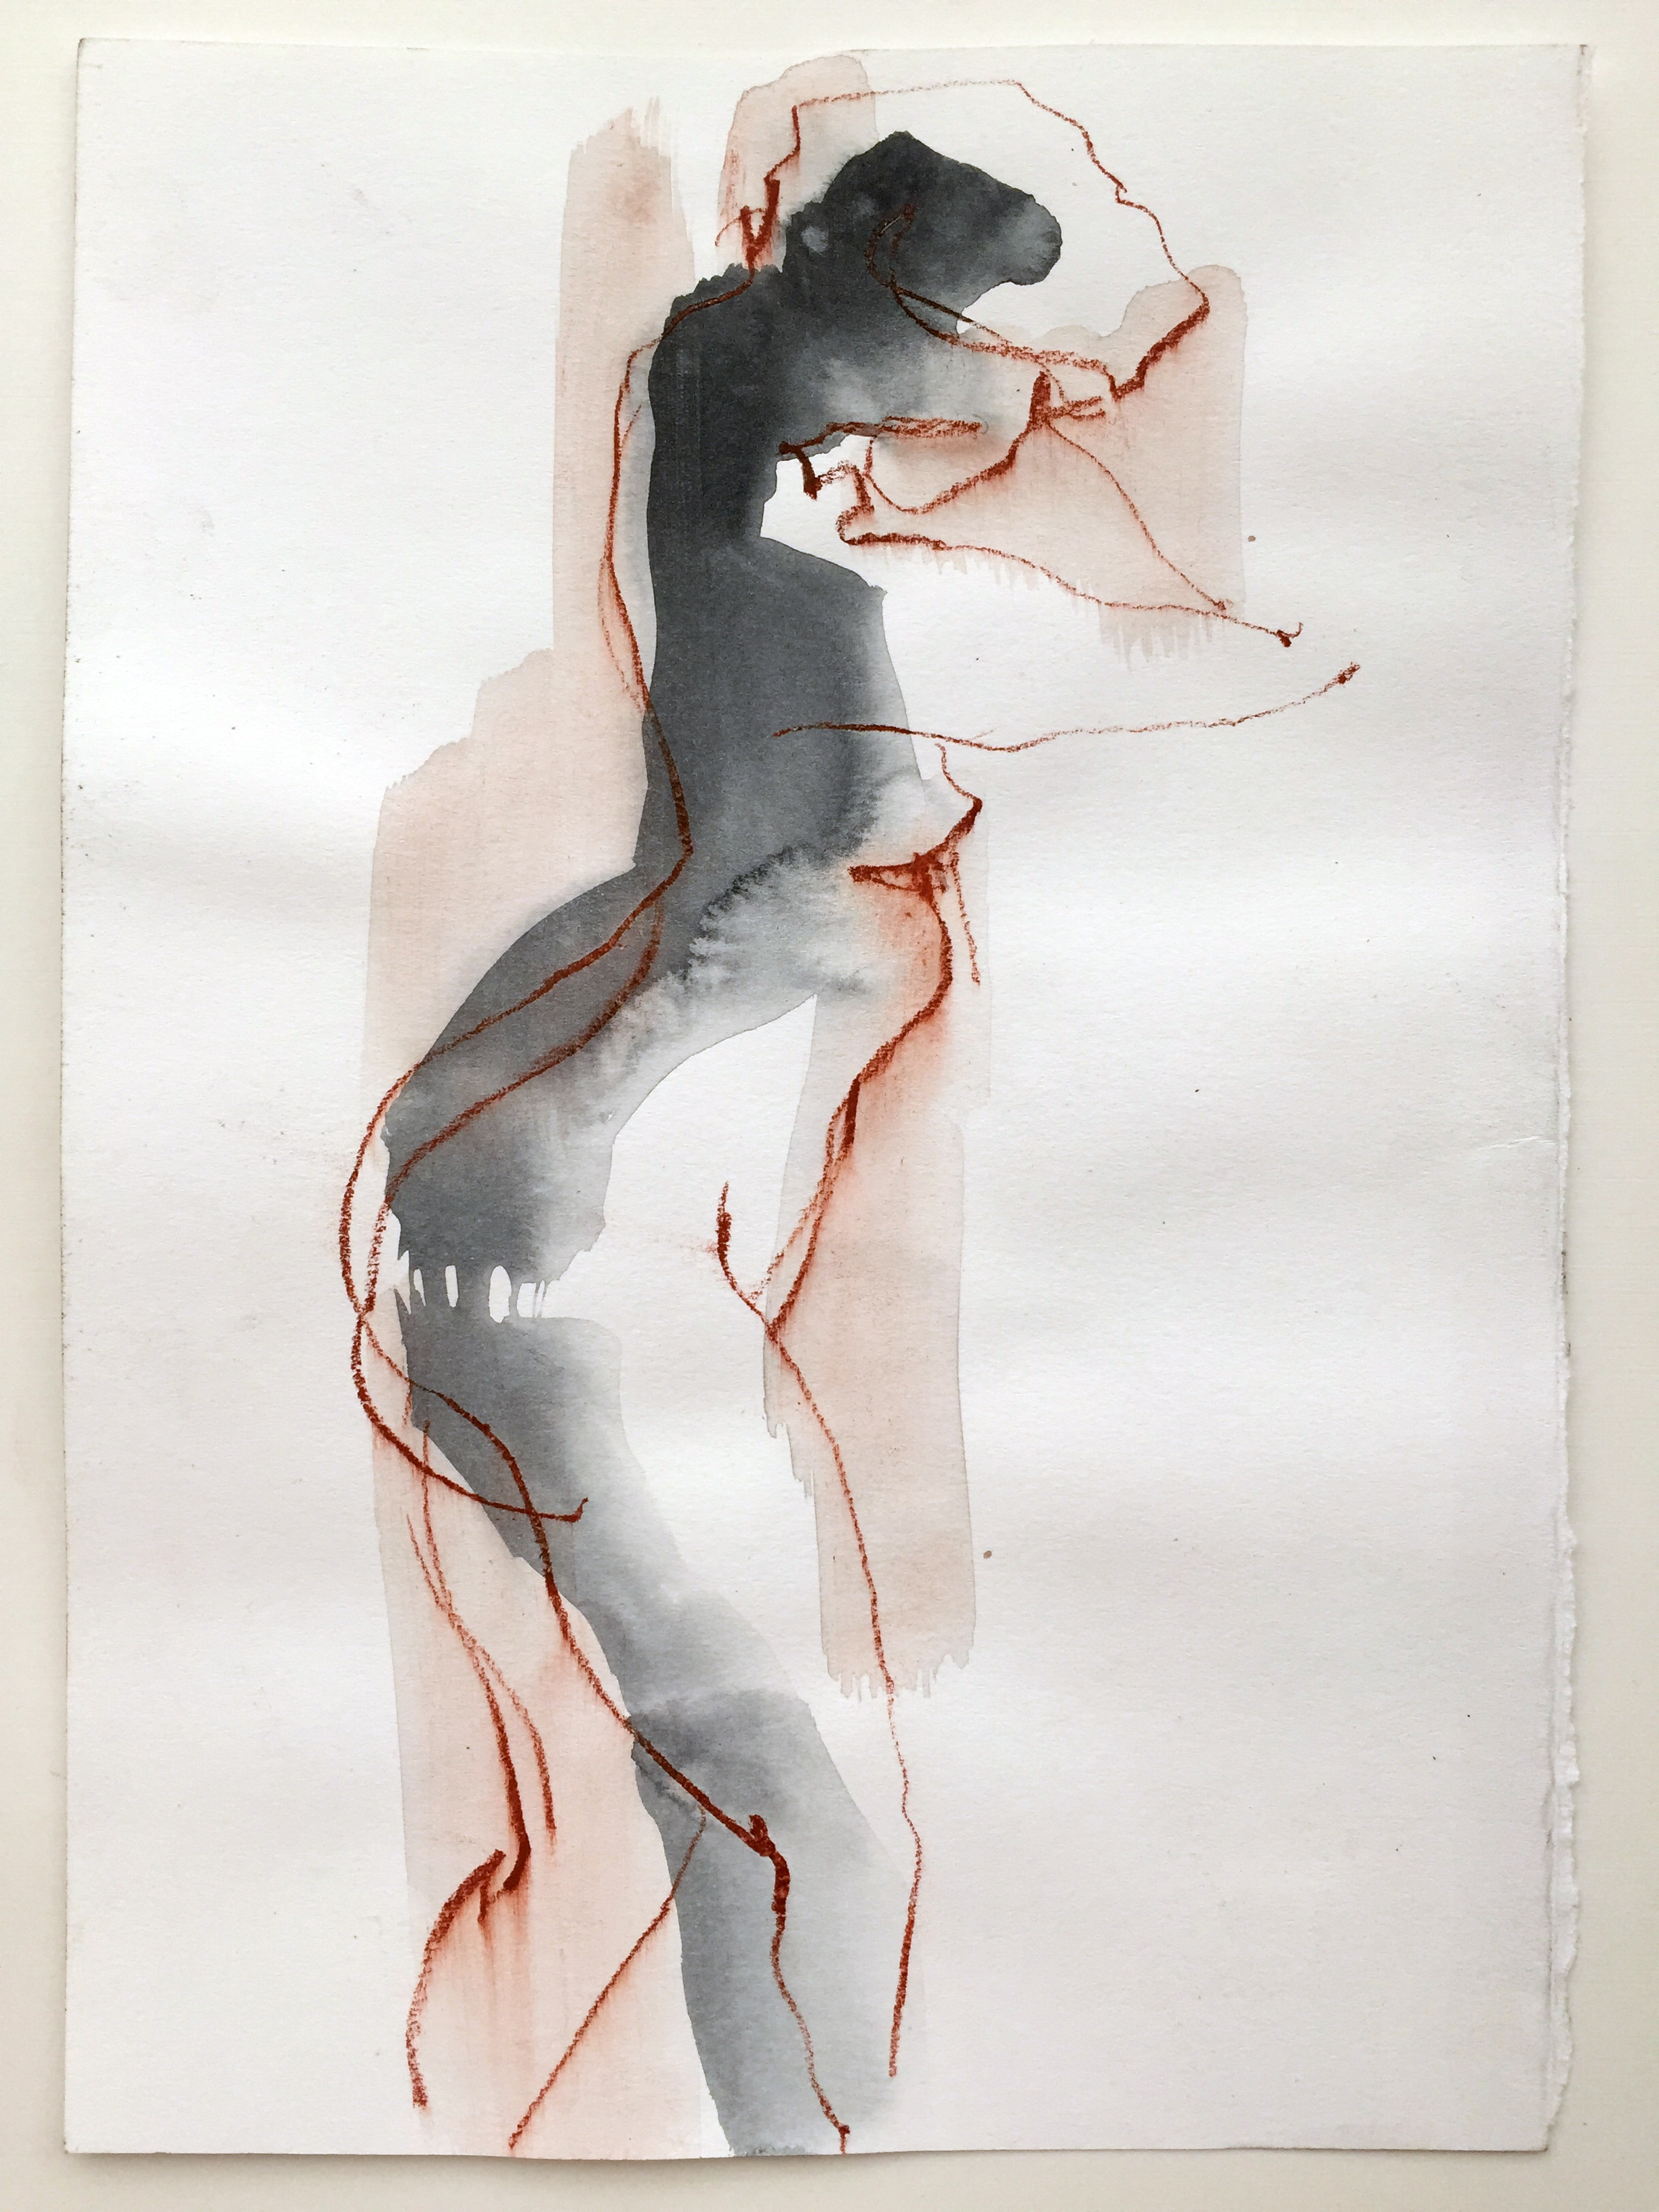   Nude 2  2016 Watercolor, conté on paper 11" x 8" 